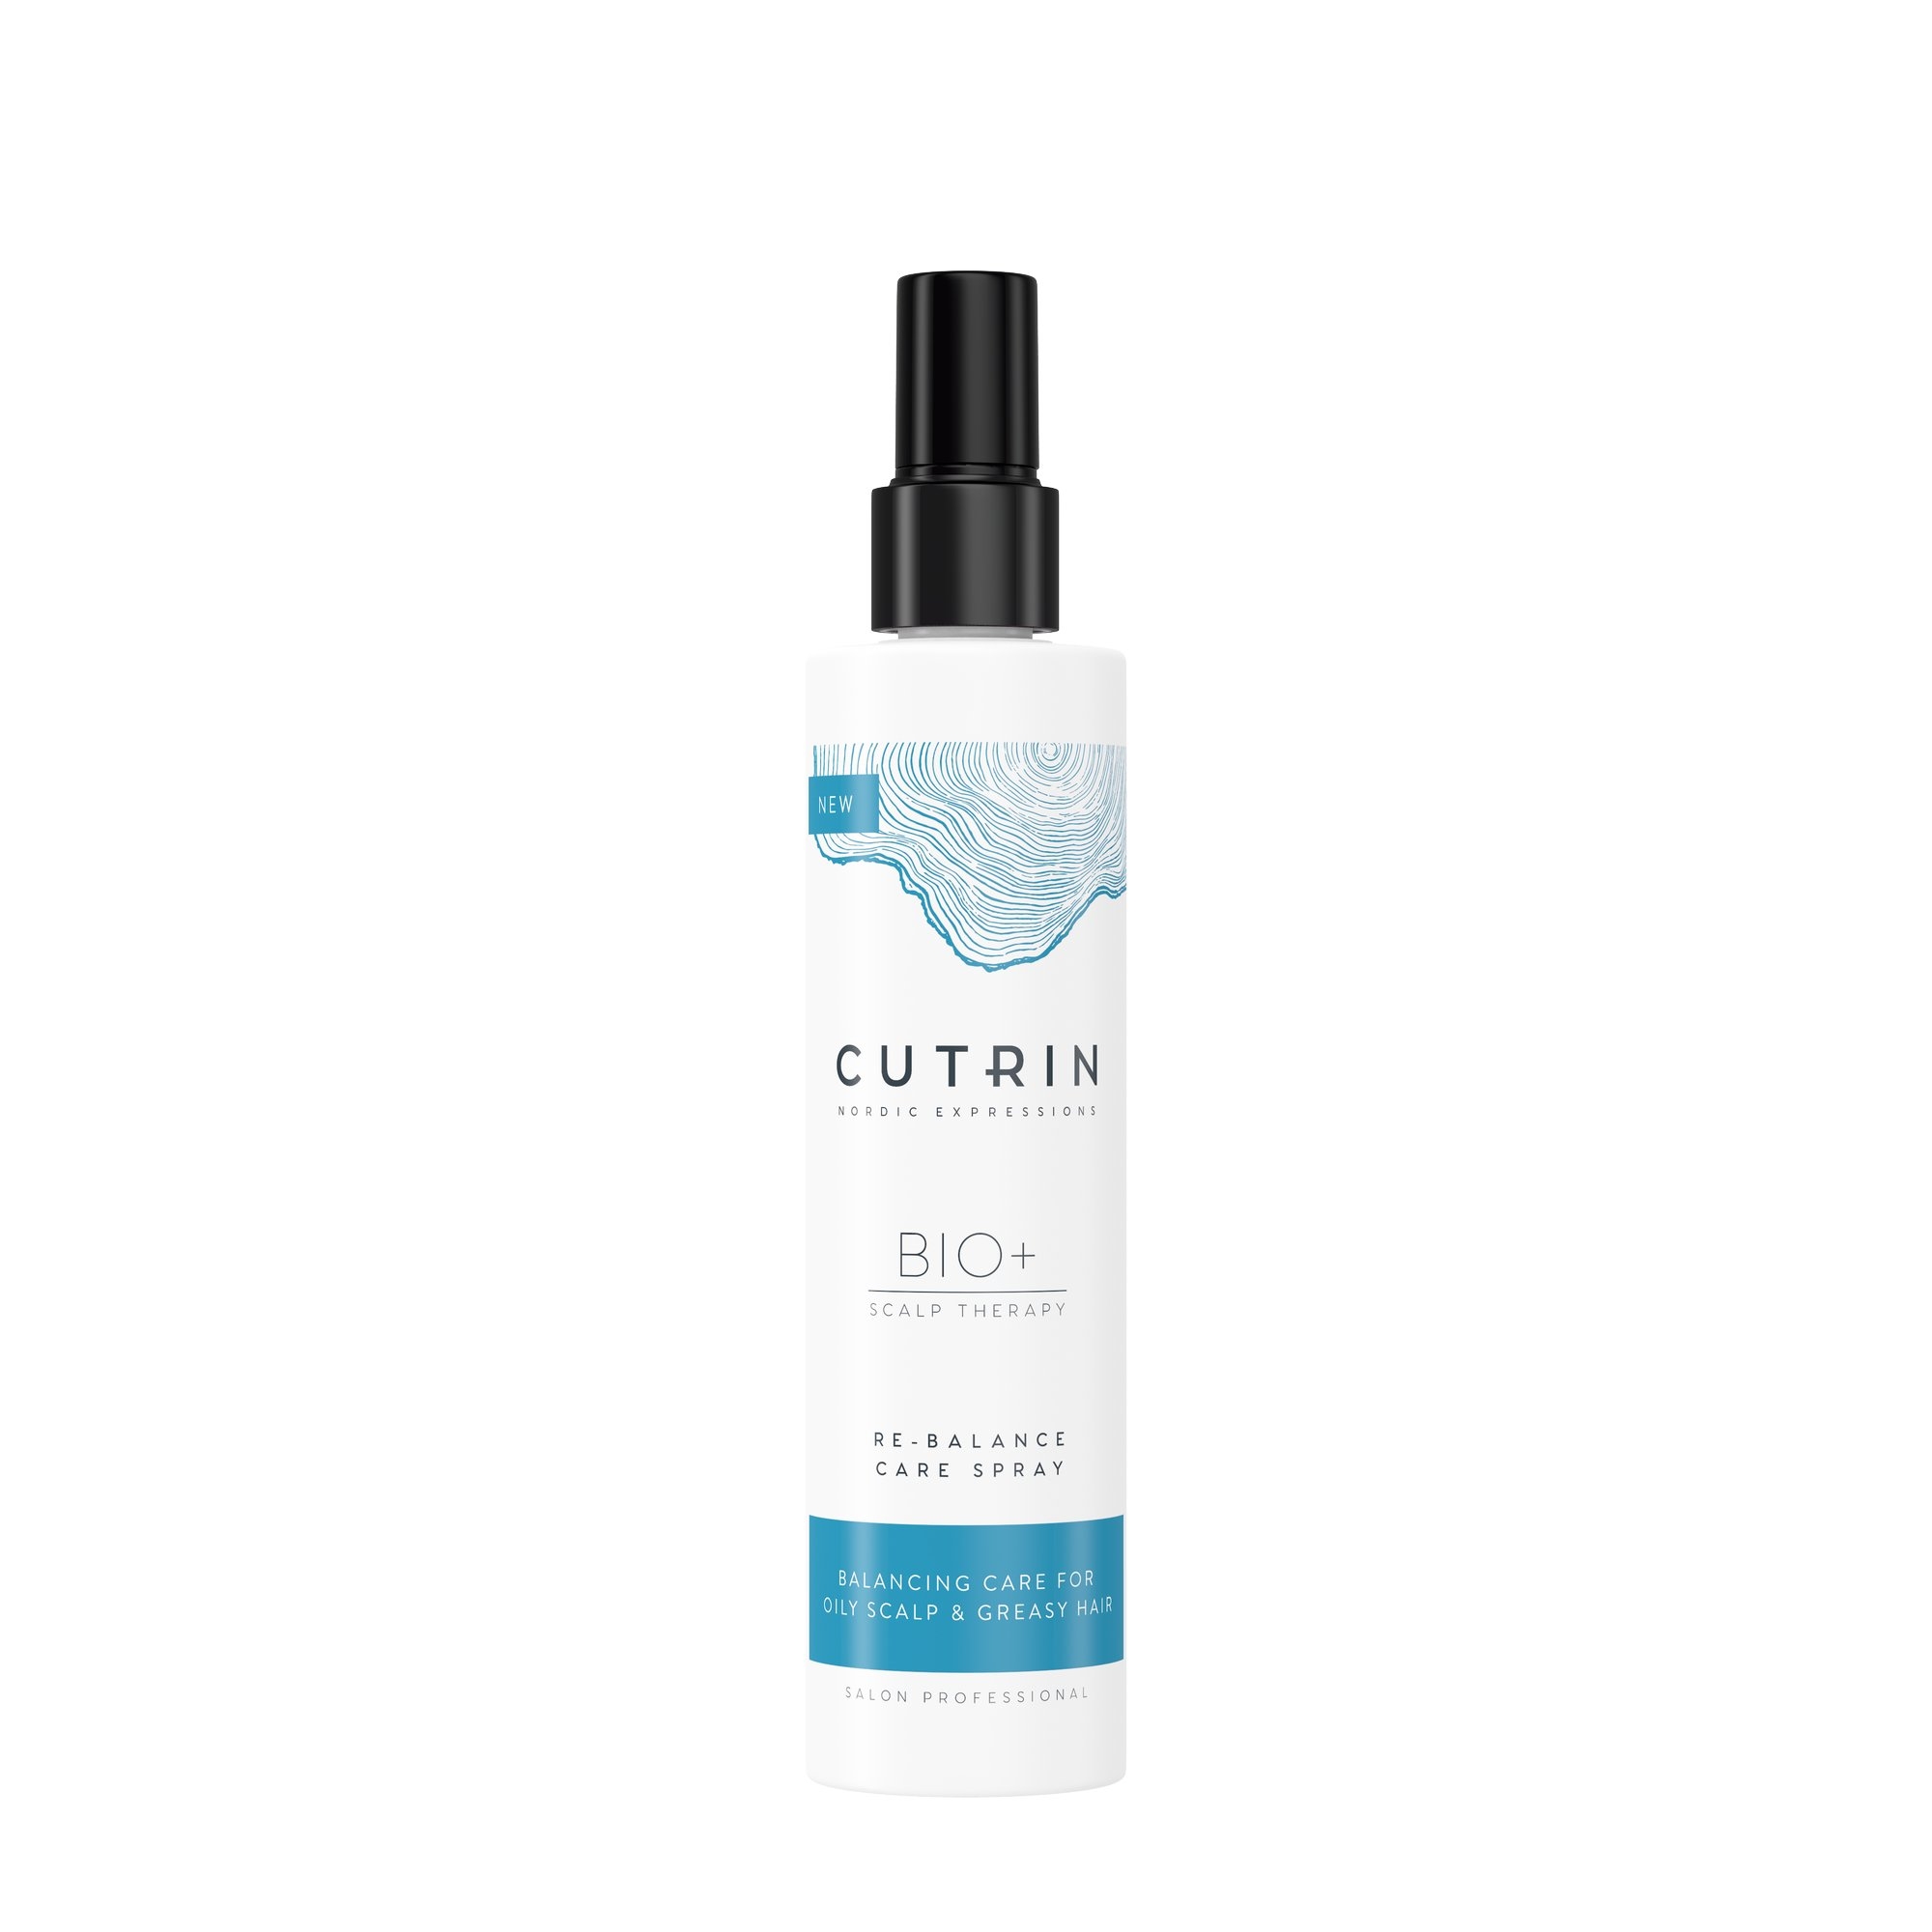 Cutrin BIO+ Re-balance Care Spray 200ml